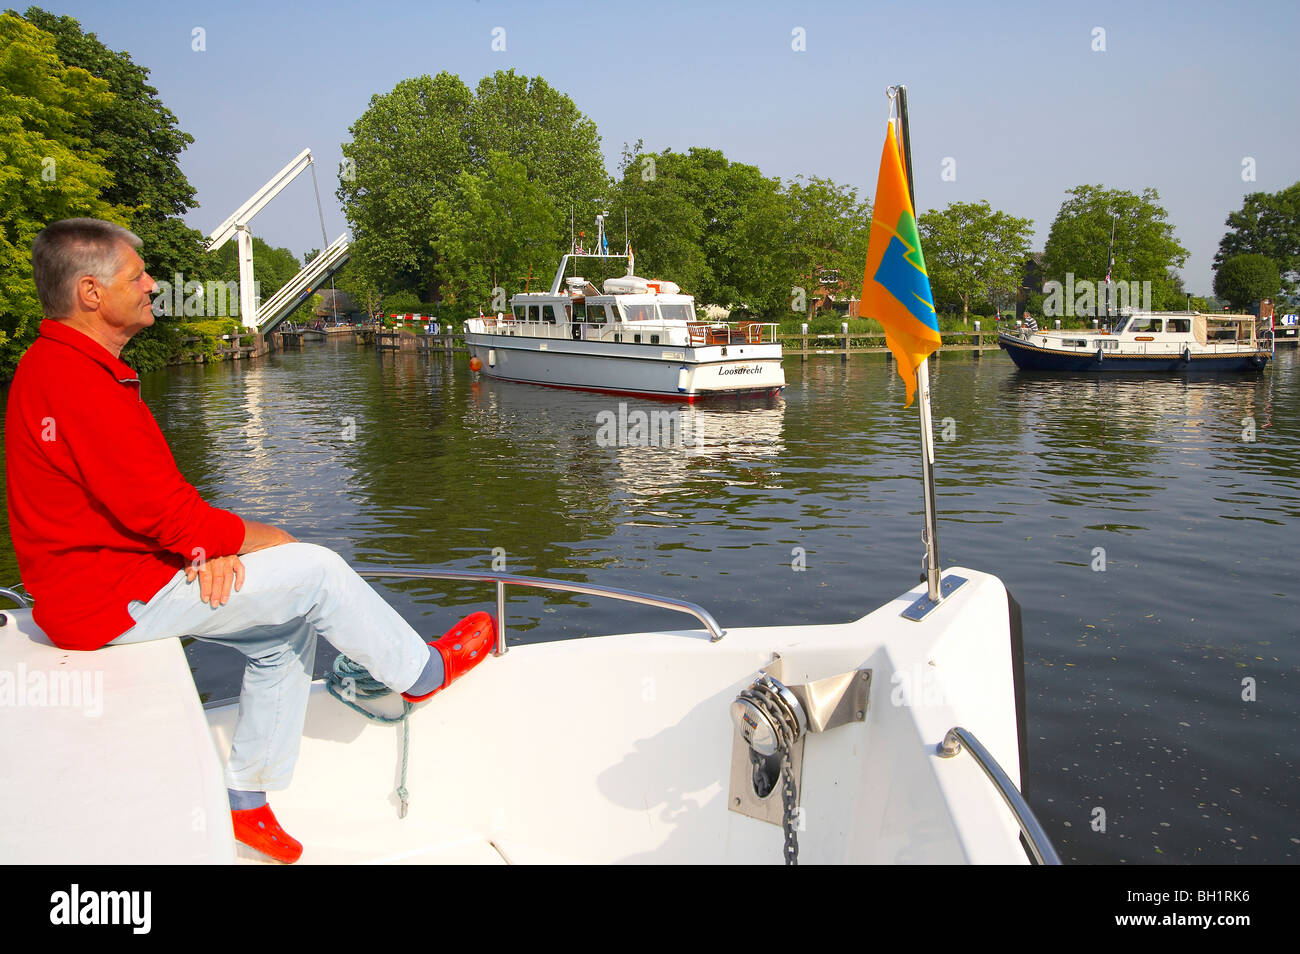 Un homme assis sur la proue d'un bateau, bateaux de la conduite sur la rivière Vecht, Pays-Bas, Europe Banque D'Images